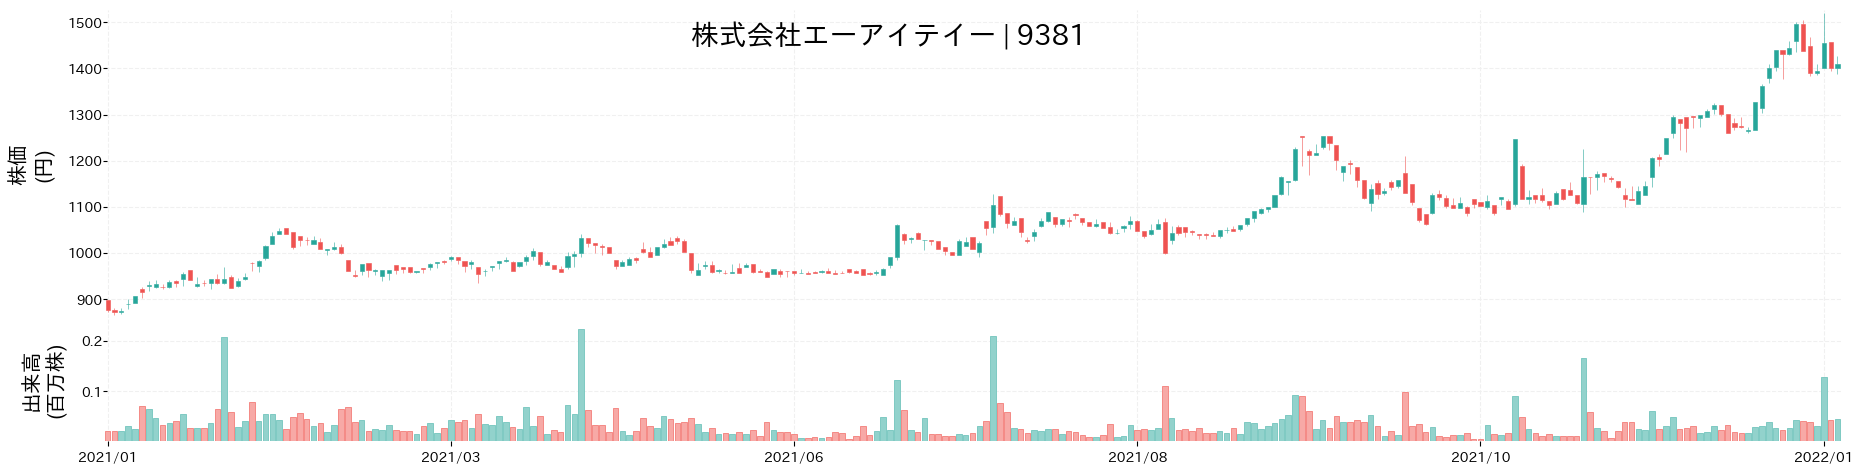 エーアイテイーの株価推移(2021)